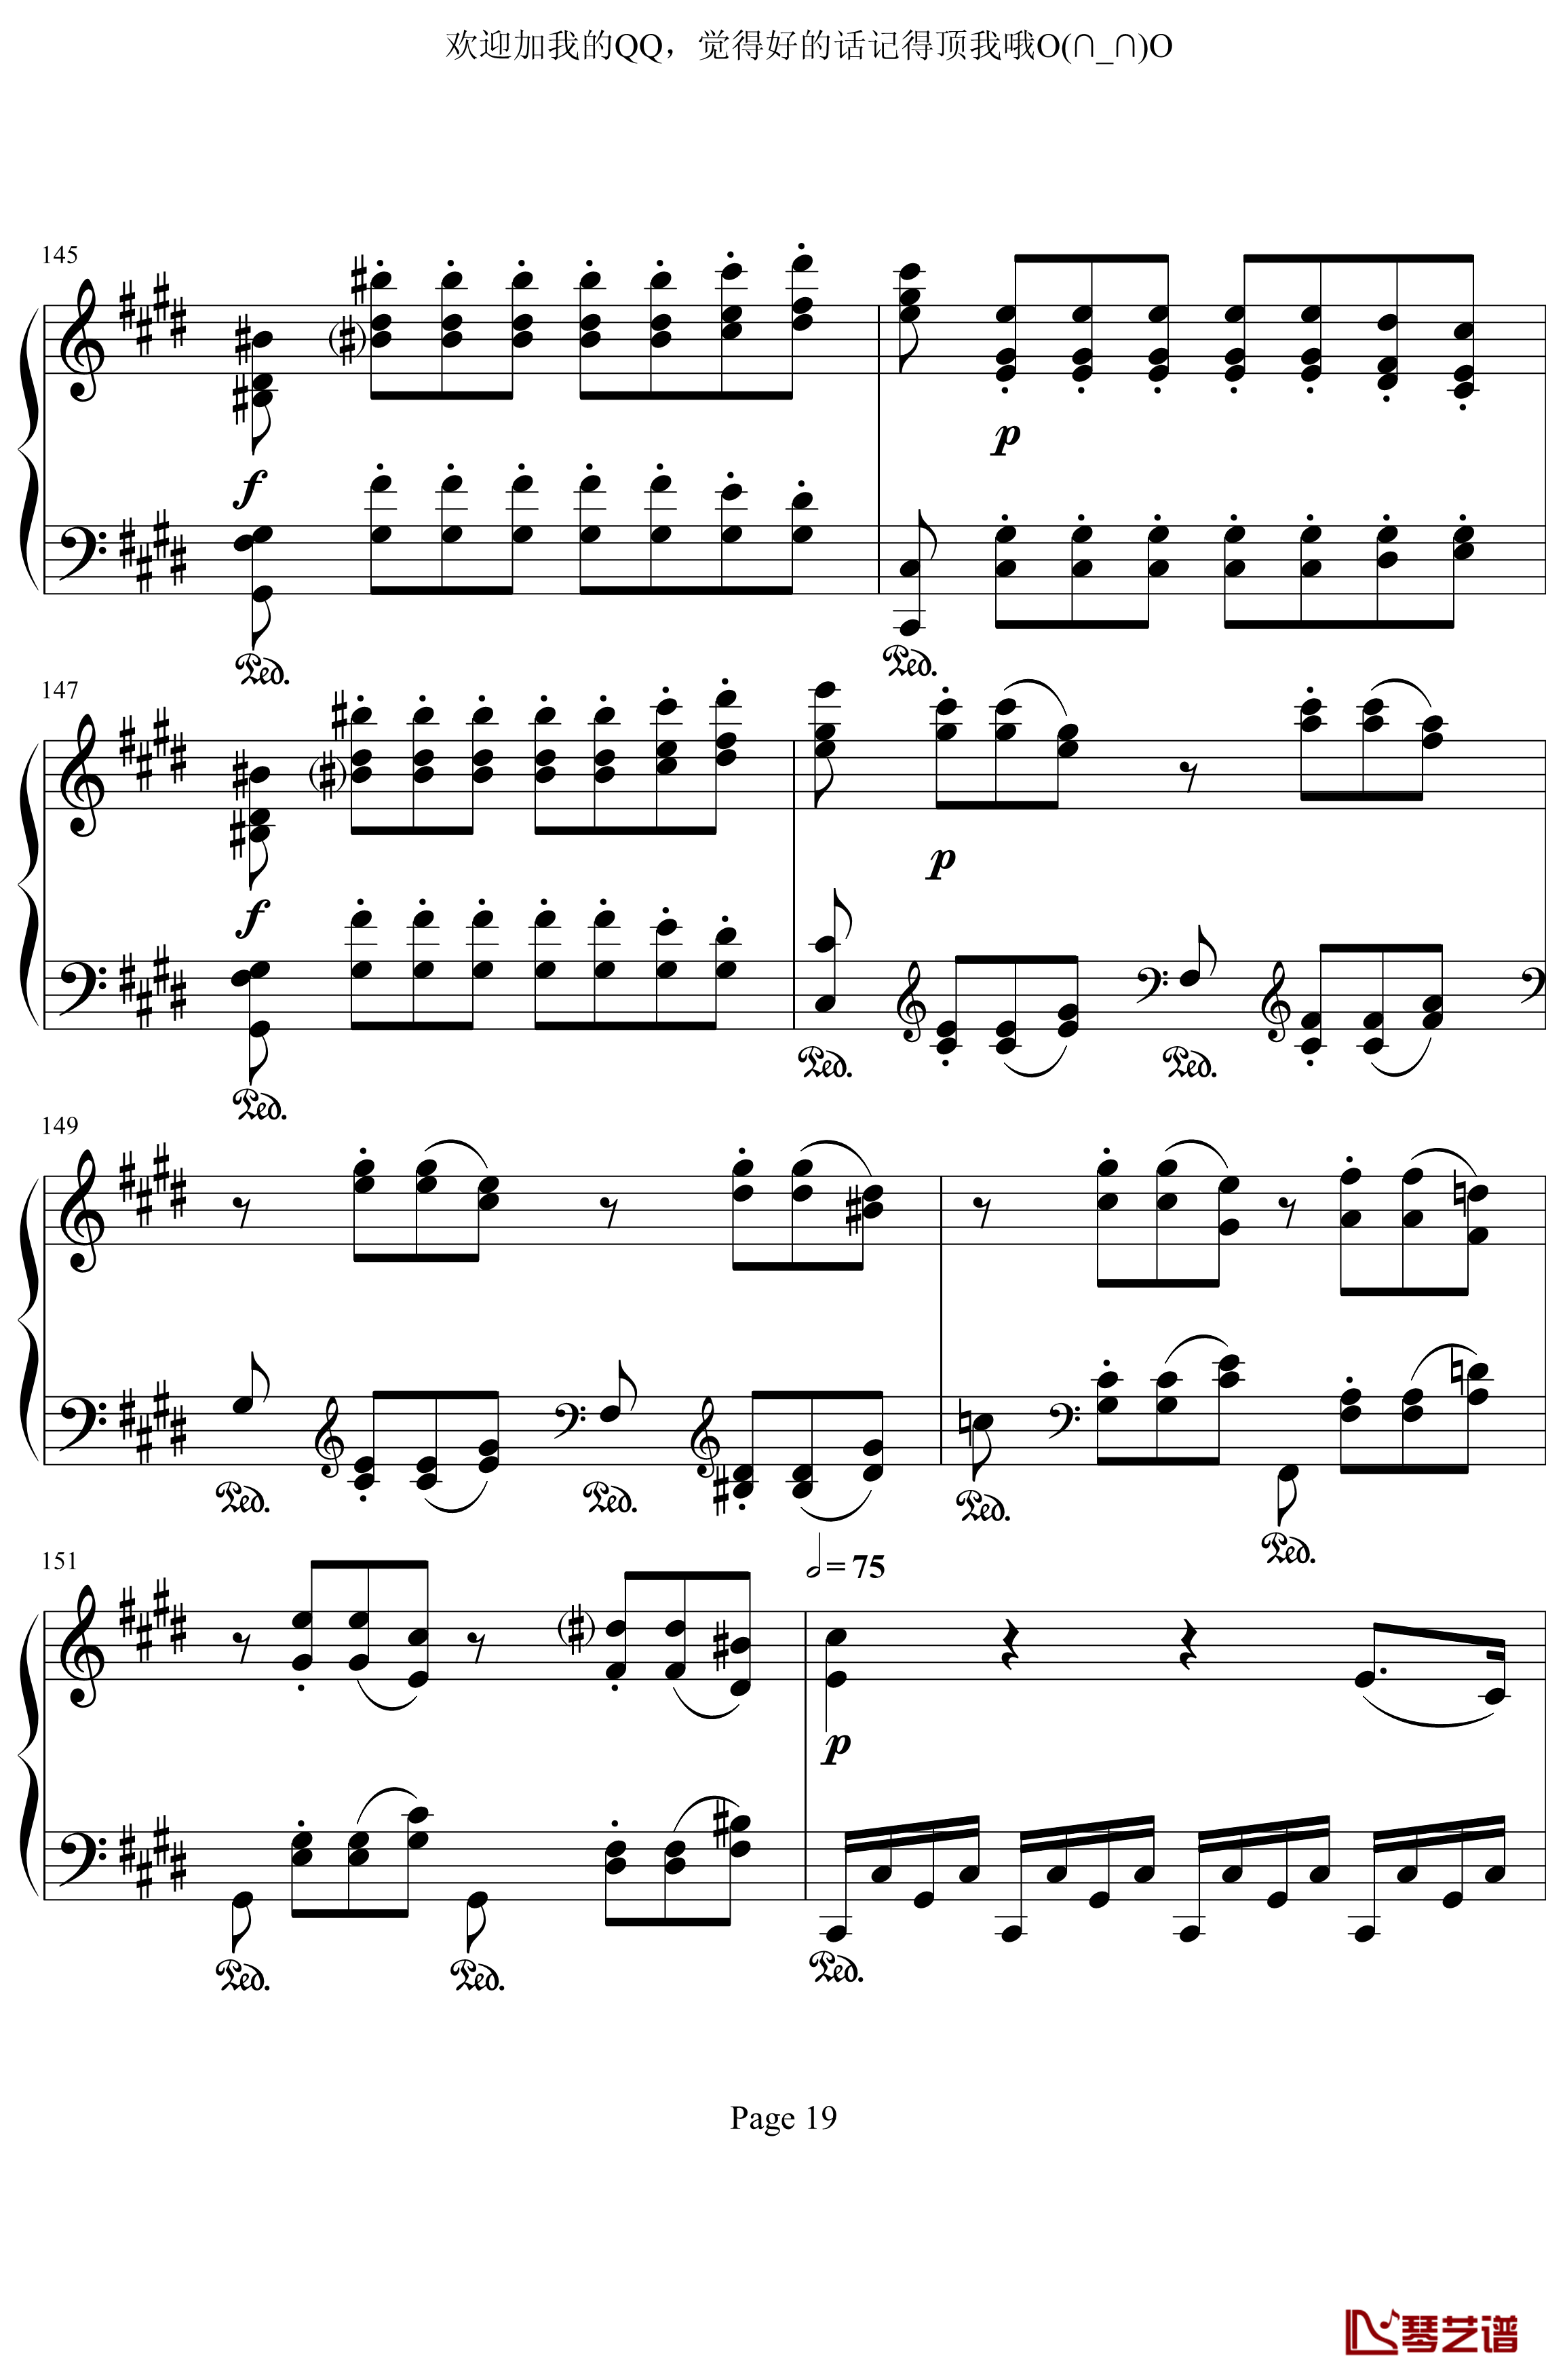 月光奏鸣曲第三乐章钢琴谱-贝多芬-beethoven19